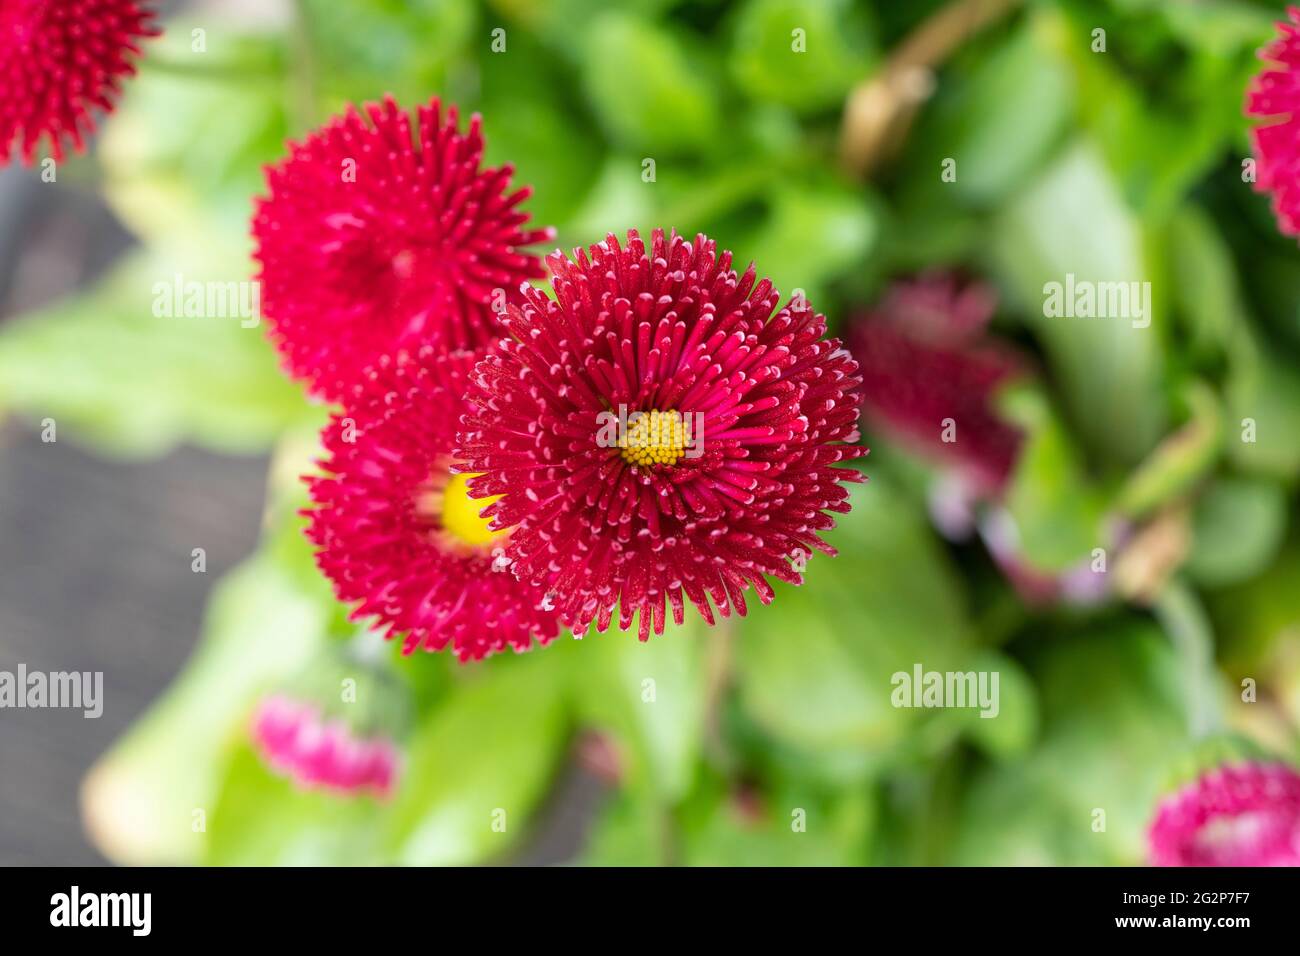 Roter Tasso Bellis (bellis perennis) mit pom pom ähnlichen Blüten, auch bekannt als englische Gänseblümchen, blüht in einem Blumentopf in Österreich Stockfoto